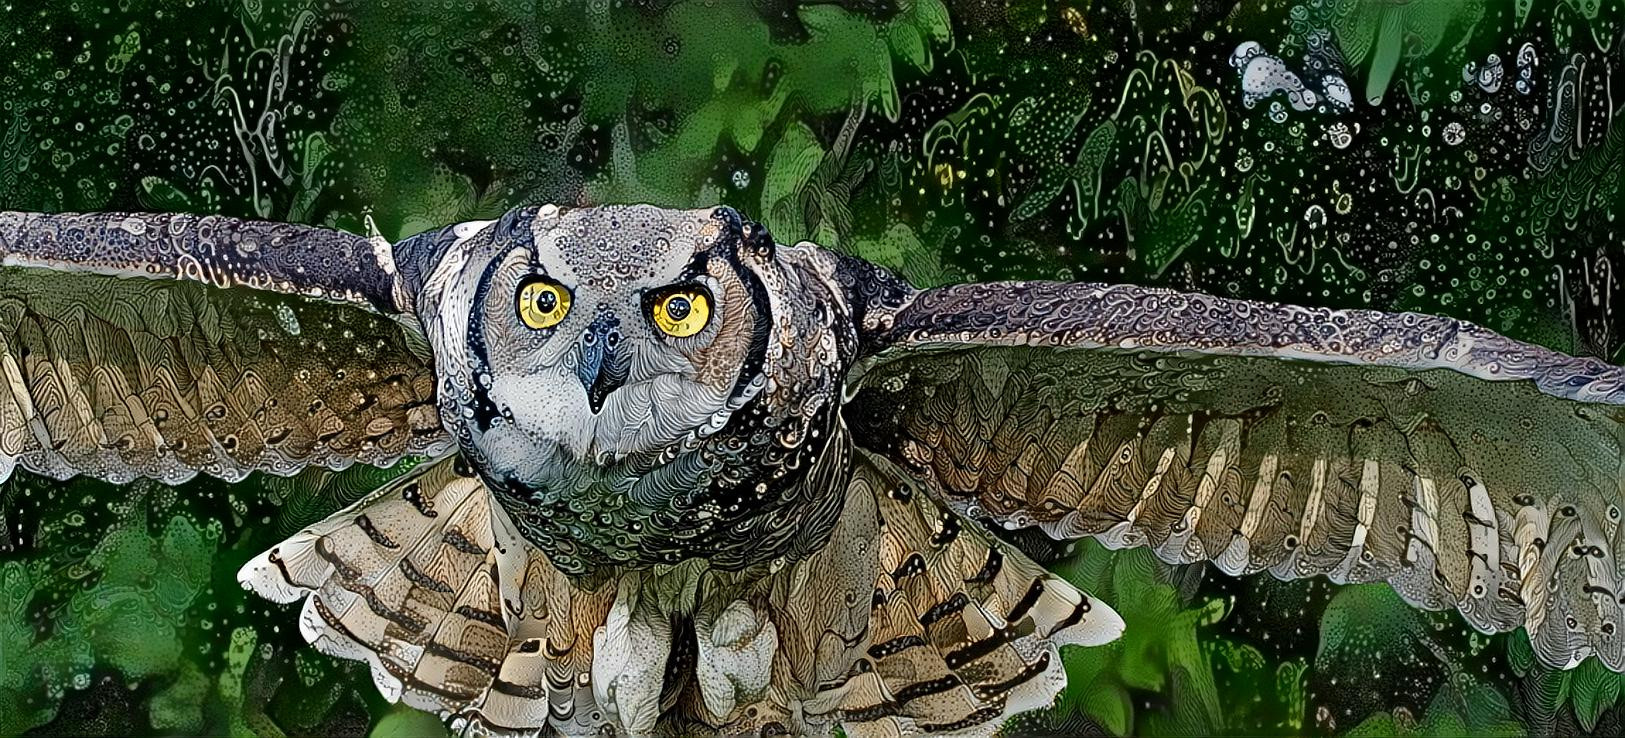 Owl on approach